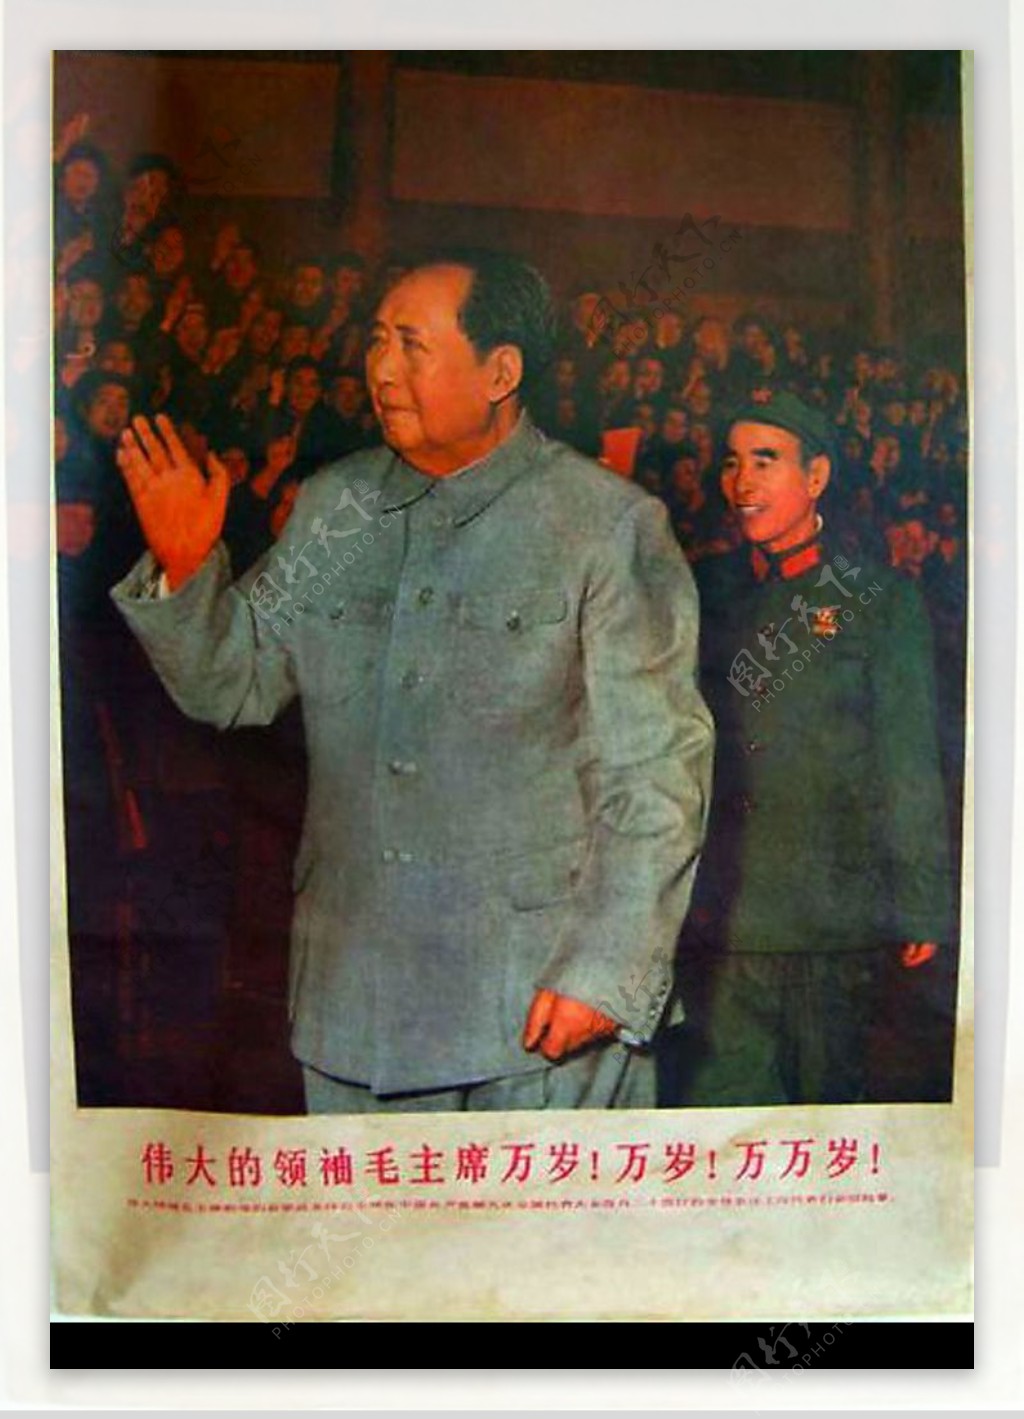 让人震撼的文革图片革命毛主席大生产保证你第1次看到